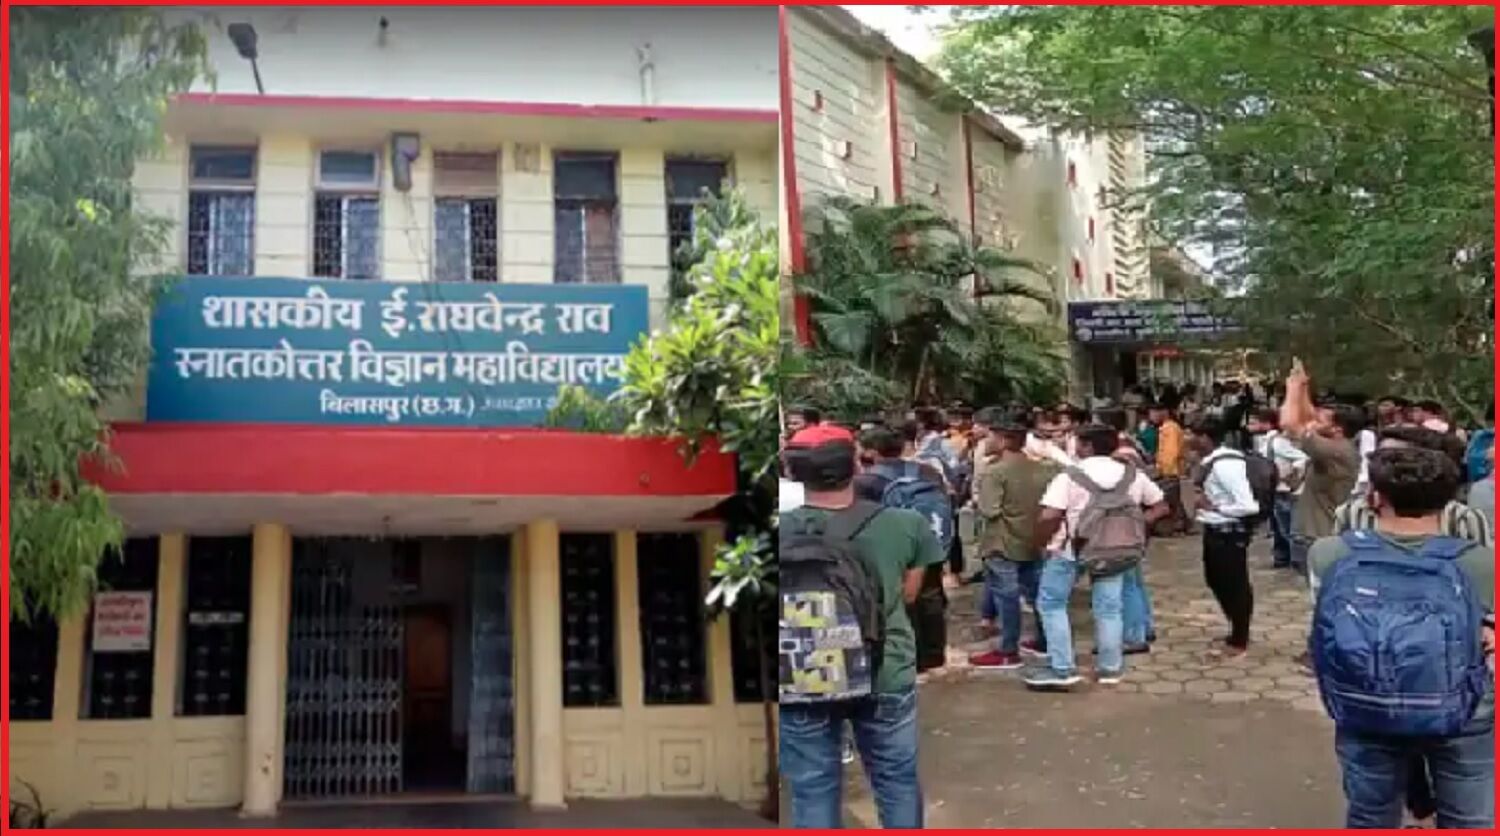 Chhattisgarh : हिंदी मीडियम को अंग्रेजी मीडियम बनाए जाने से सकते में आए हजारों छात्र, विरोध में हुआ आंदोलन शुरू